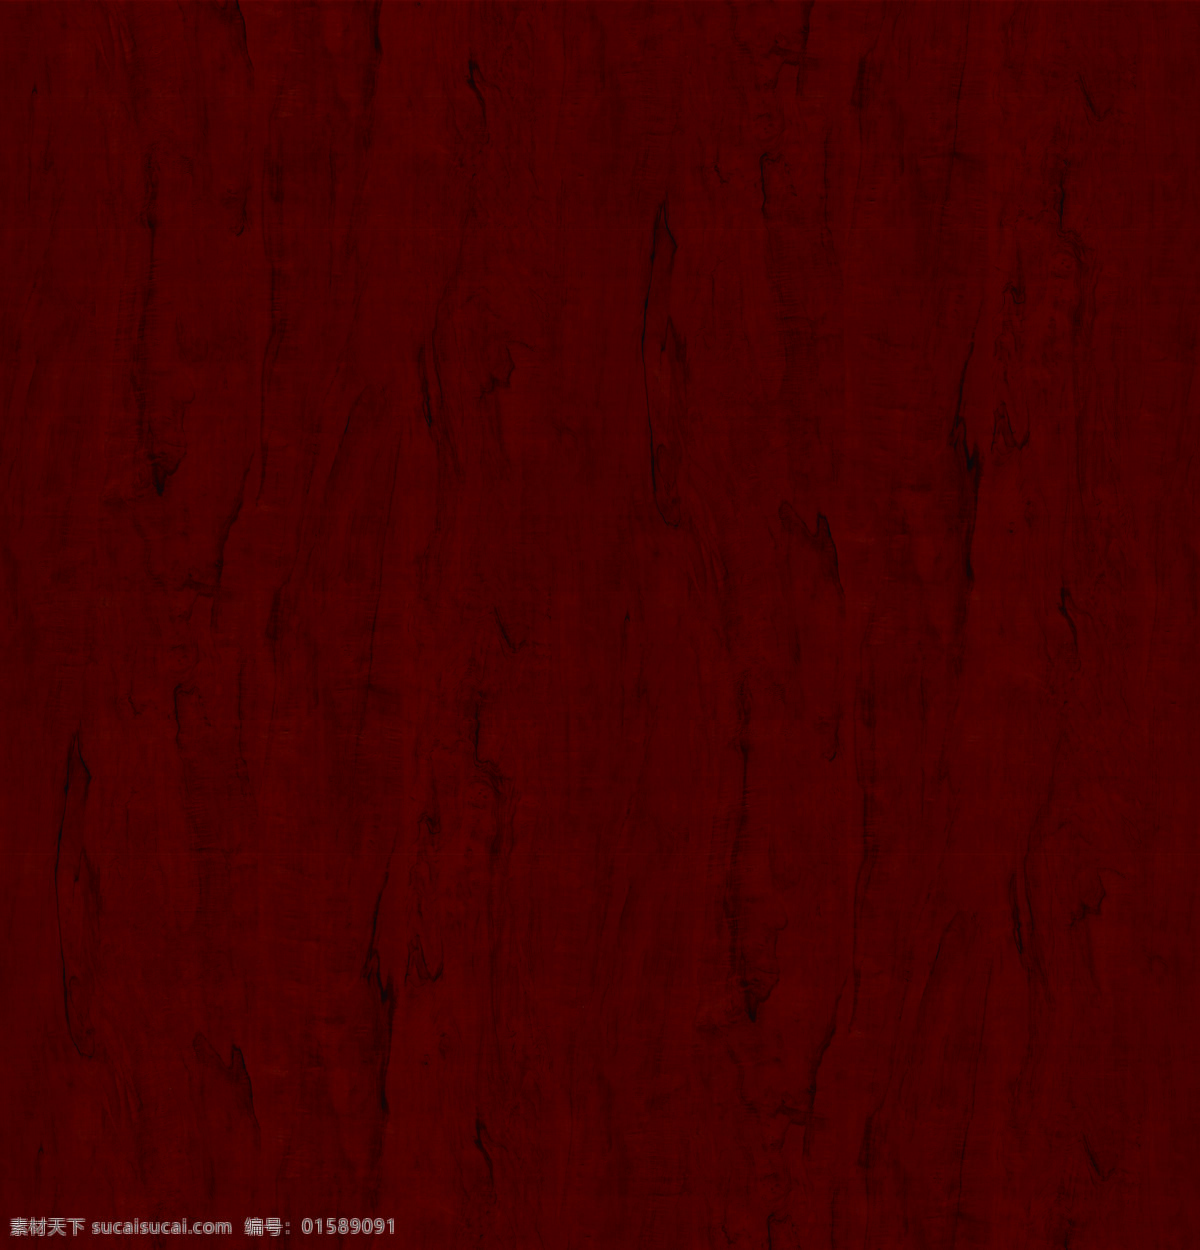 深色木纹 木纹 深色 木板 背景 木头 底纹 红棕色 红木 底纹边框 背景底纹